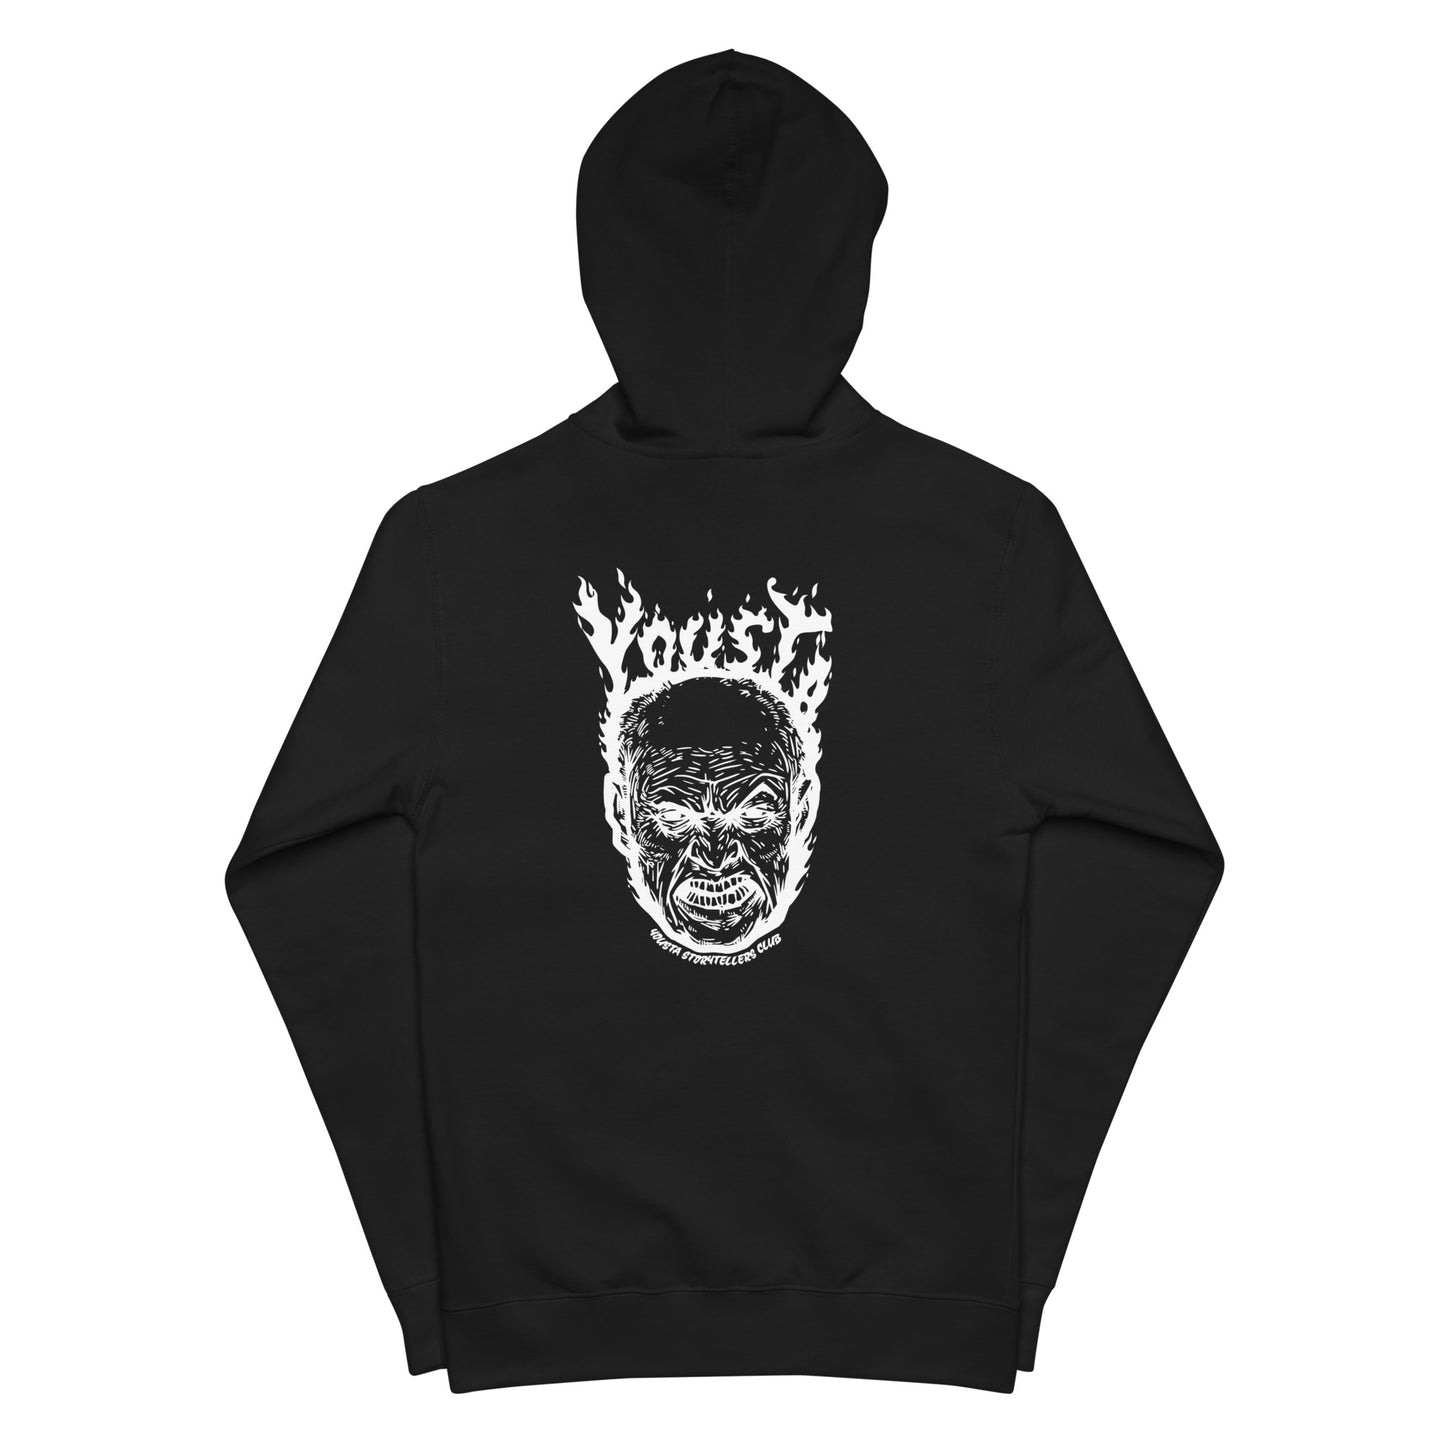 Hothead Unisex fleece zip up hoodie